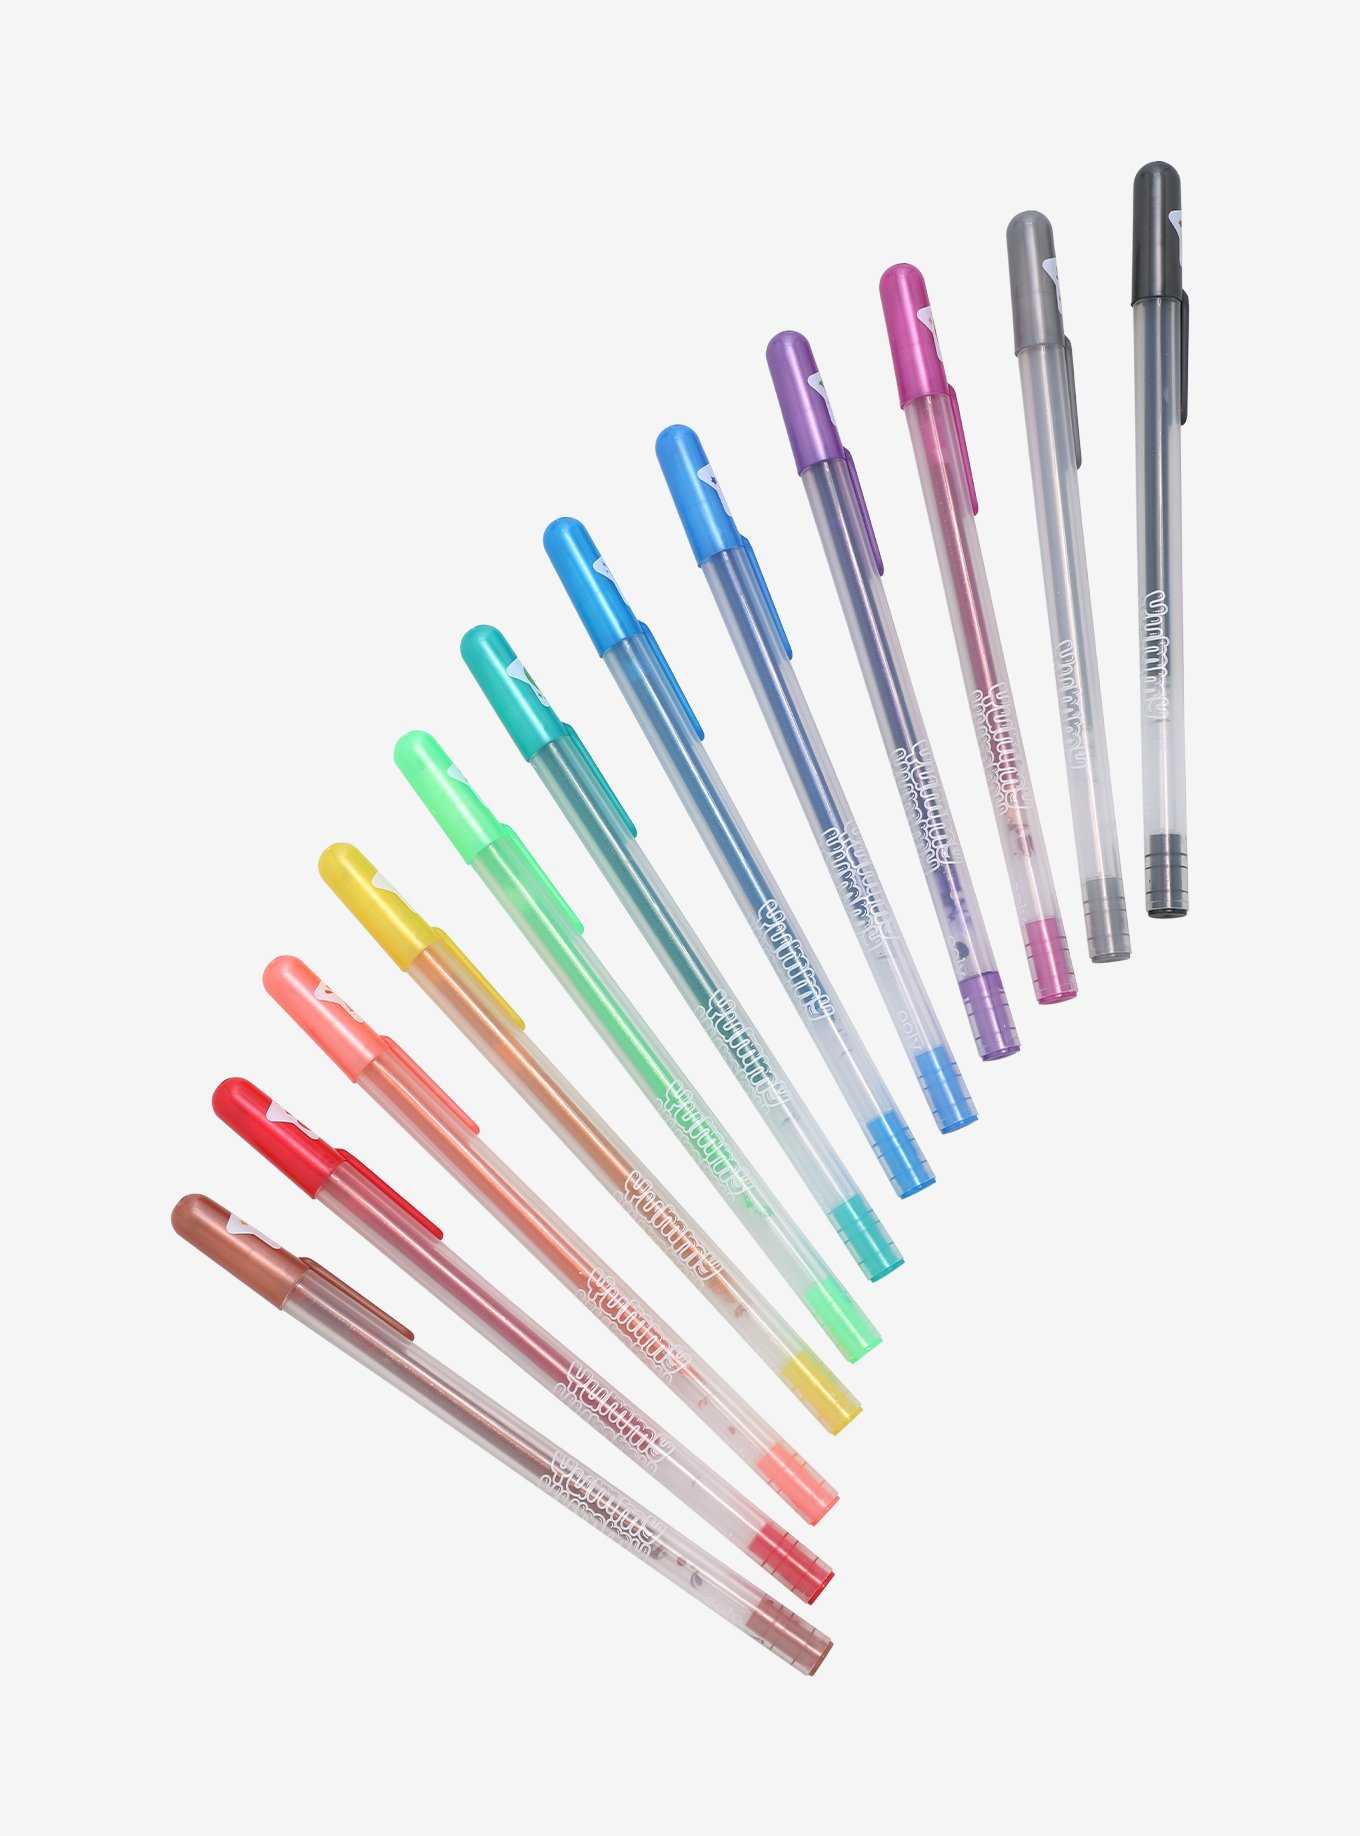 1/20 Pcs Multi Color Rainbow Highlighters Gel Pens Pens Pens Paint